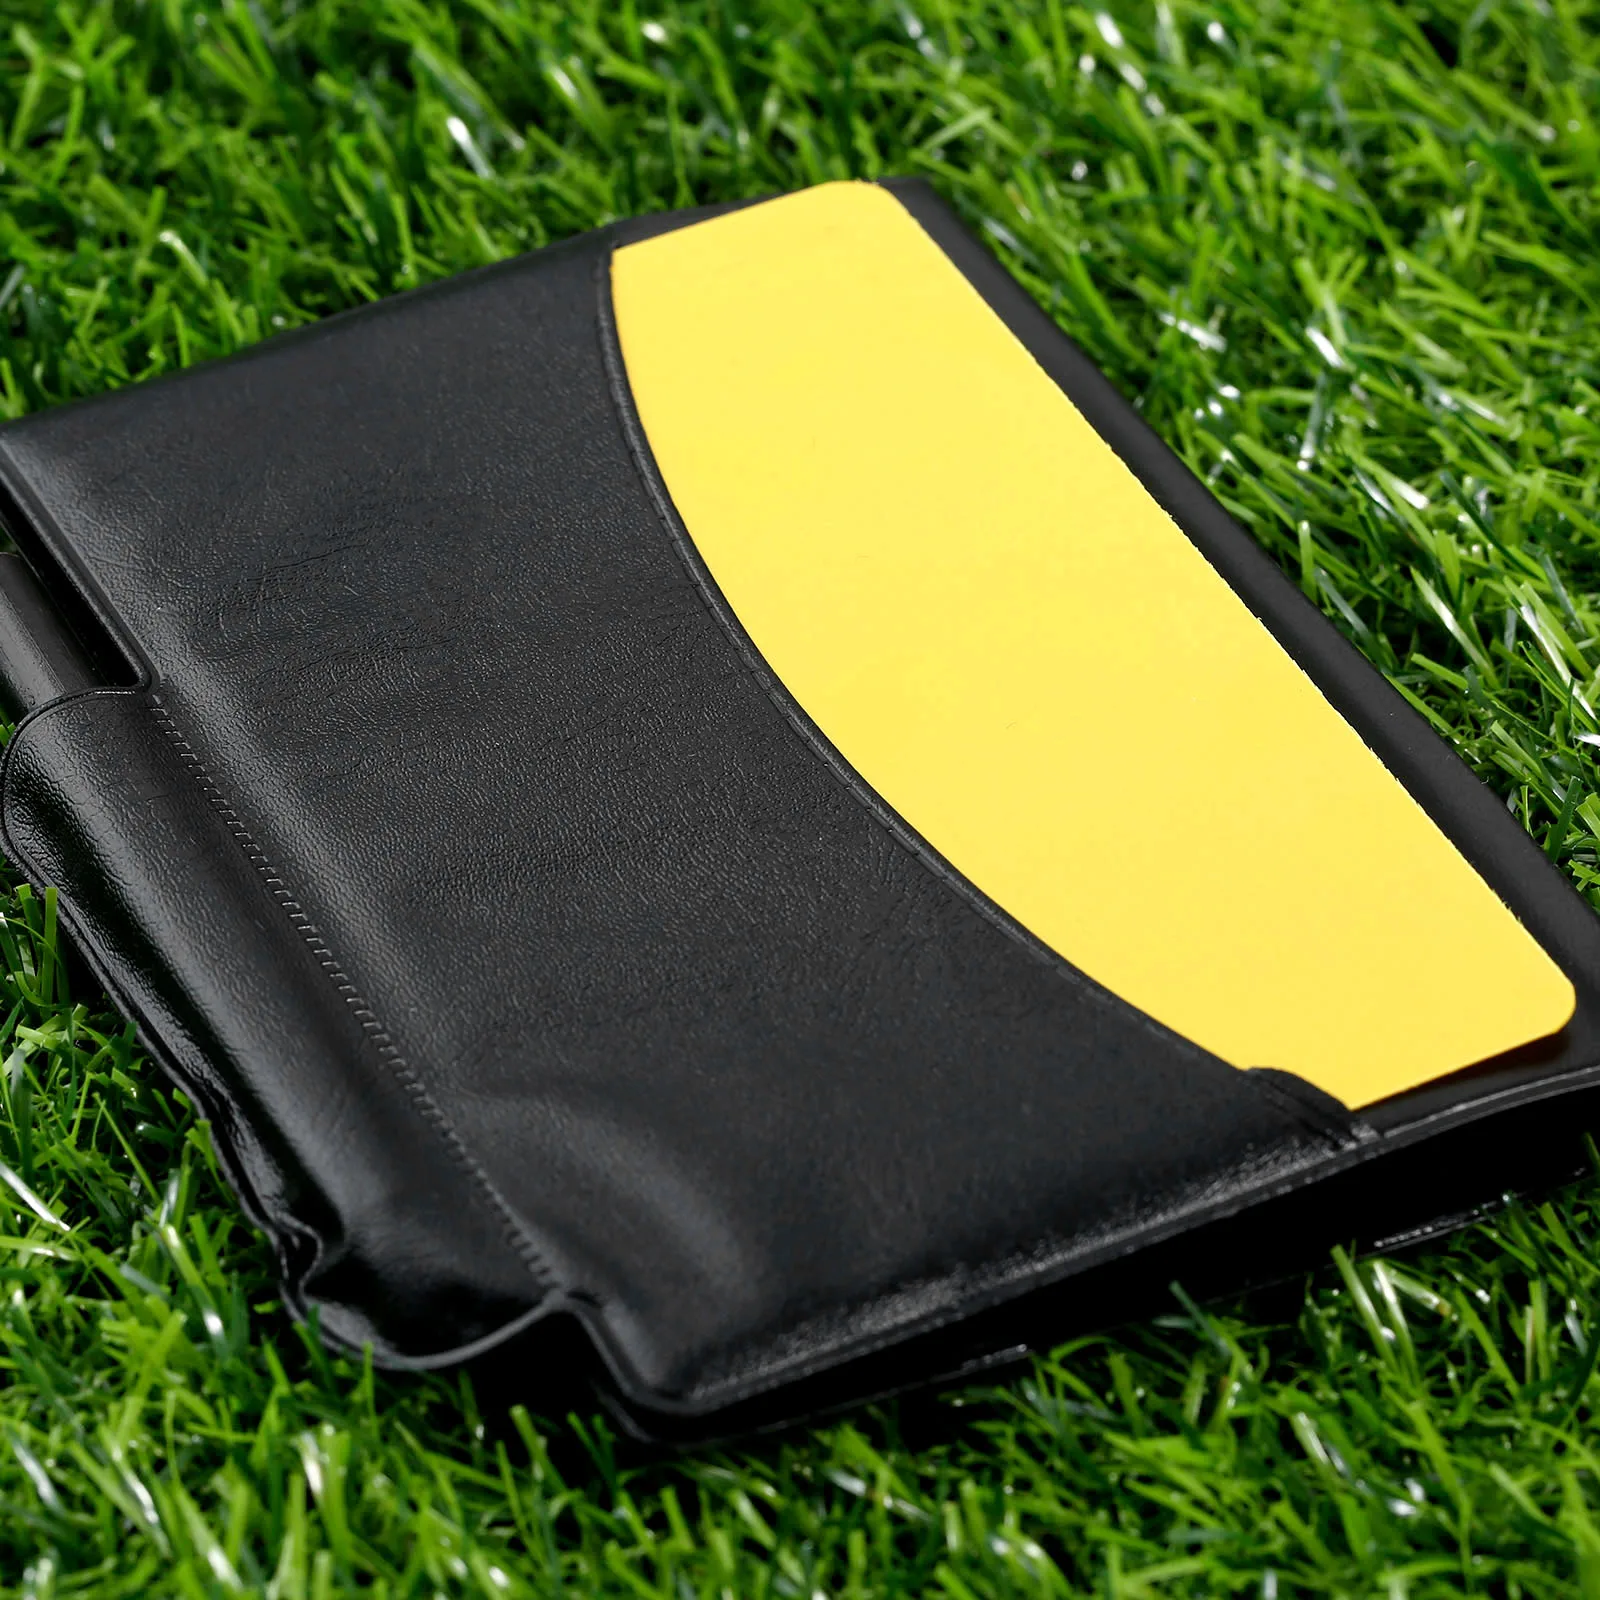 Gohantee 2ps futebol acessórios jogo árbitro notebook com cartão vermelho  cartão amarelo e lápis para jogos de futebol árbitros - AliExpress